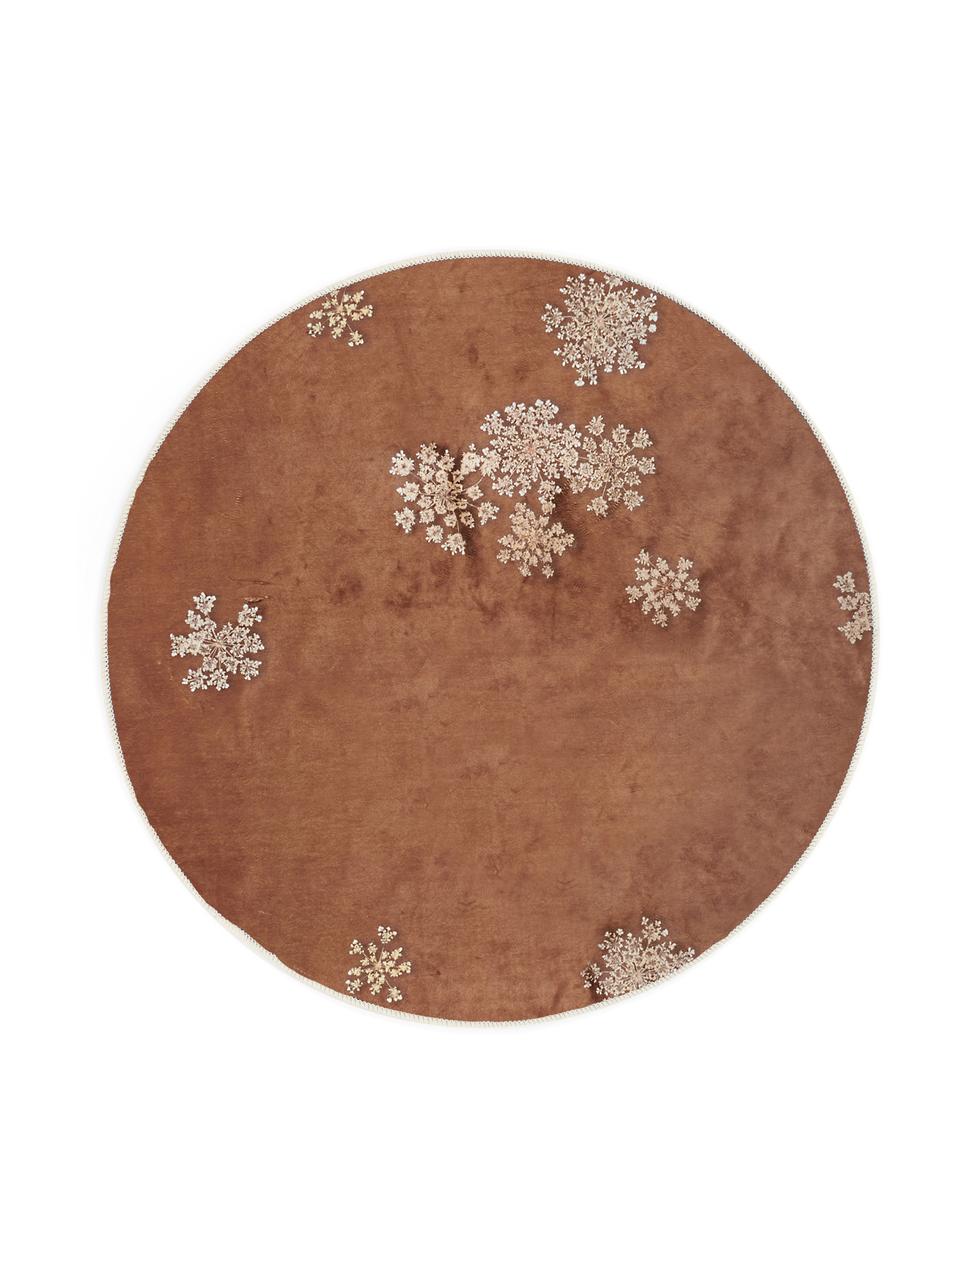 Rond vloerkleed Lauren met bloemenprint, 60% polyester, 30% thermoplastisch polyurethaan, 10% katoen, Bruin, beige, Ø 90 cm (maat XS)